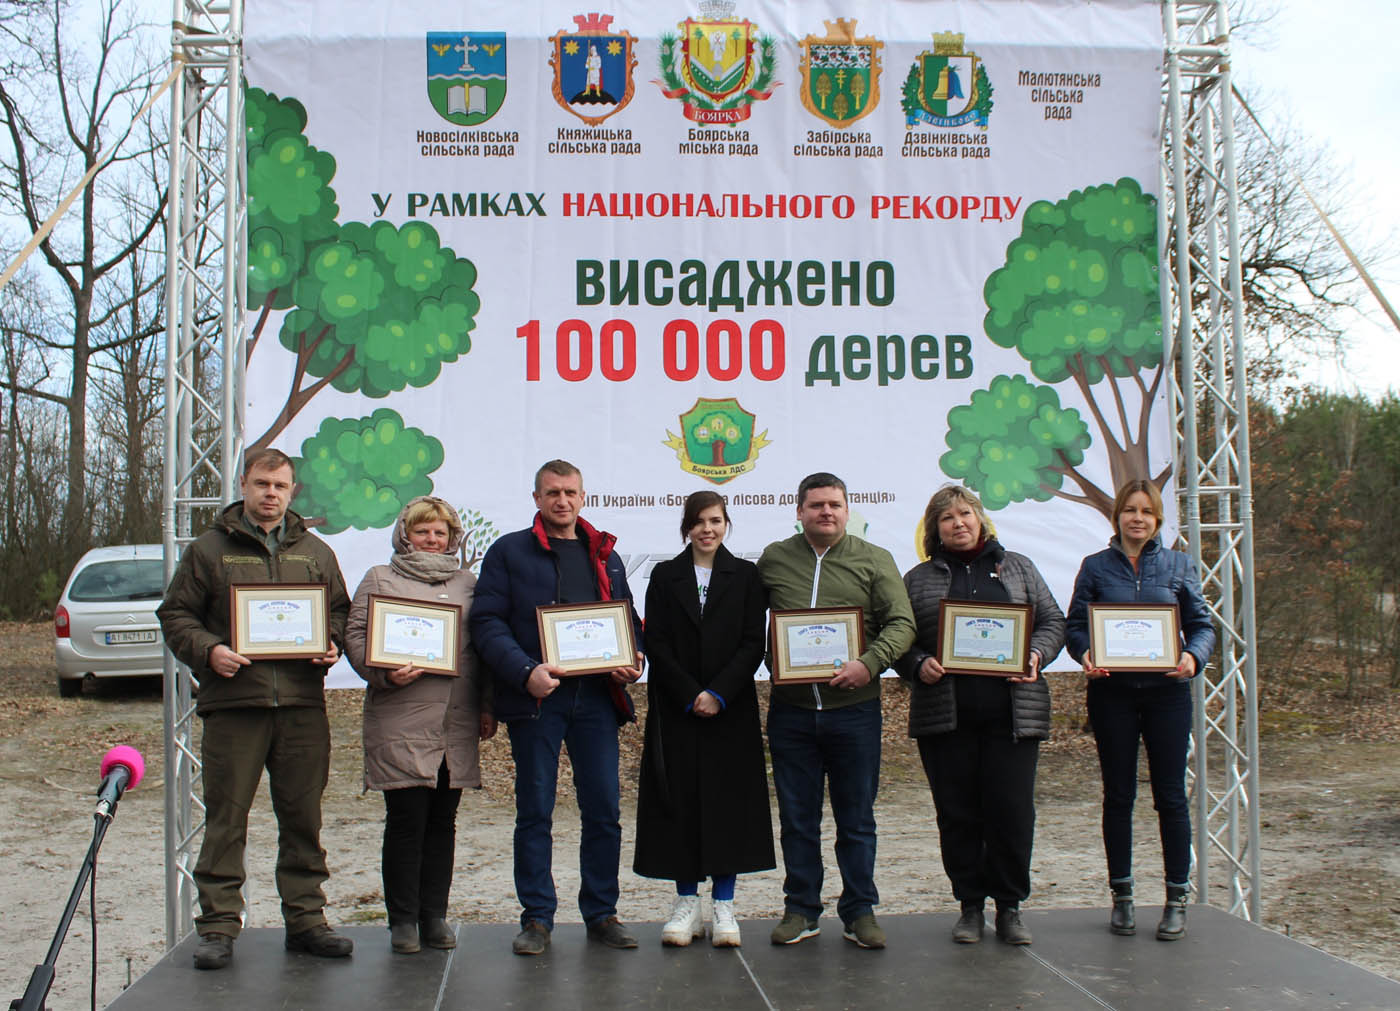 На Киевщине установили Национальный рекорд Украины